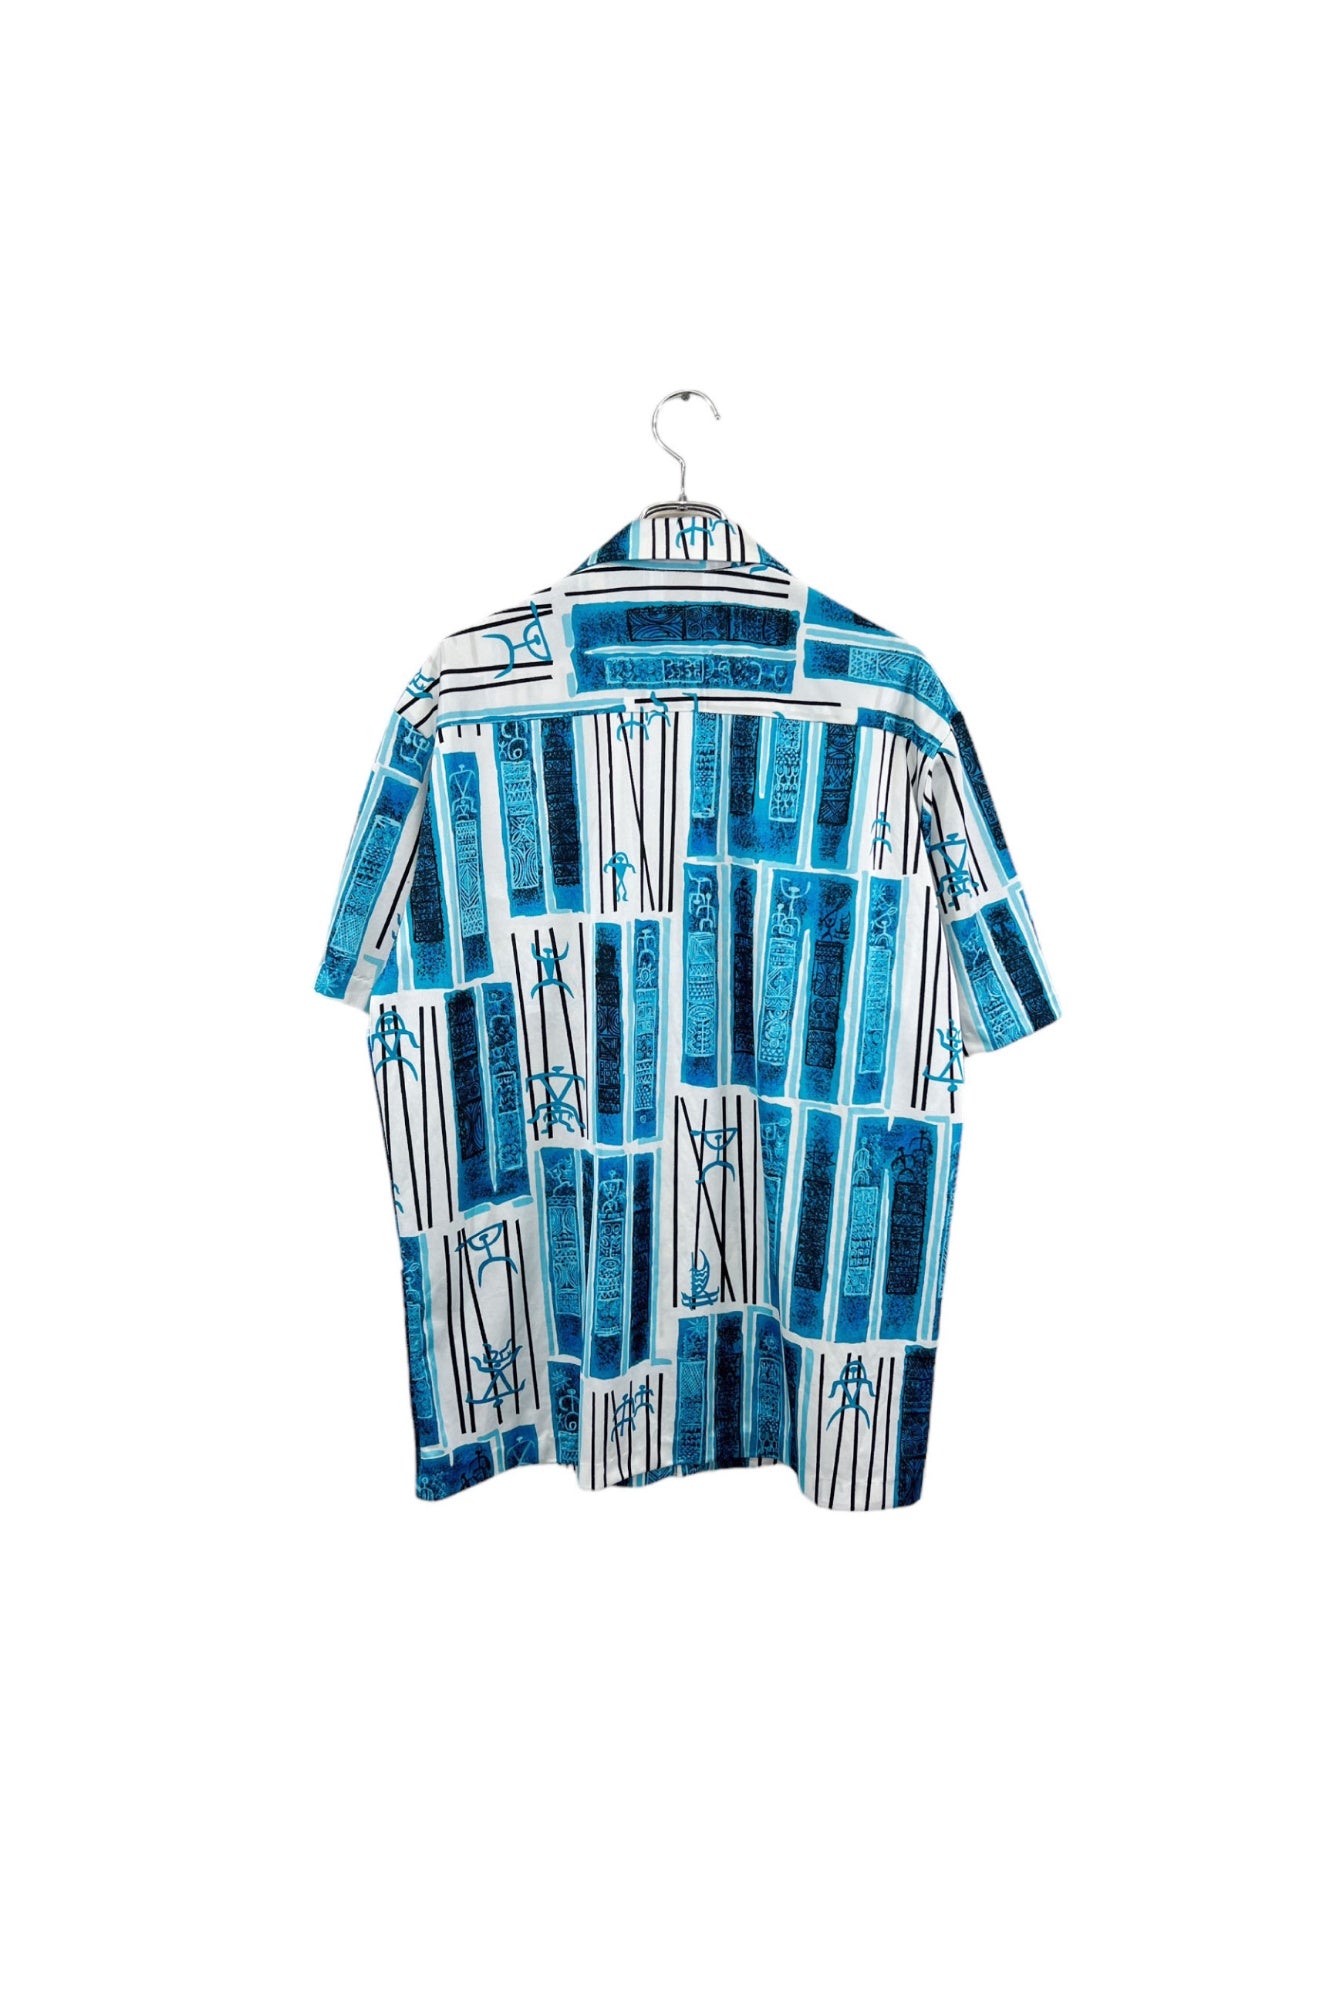 夏威夷制造 NAPILI 阿罗哈衬衫